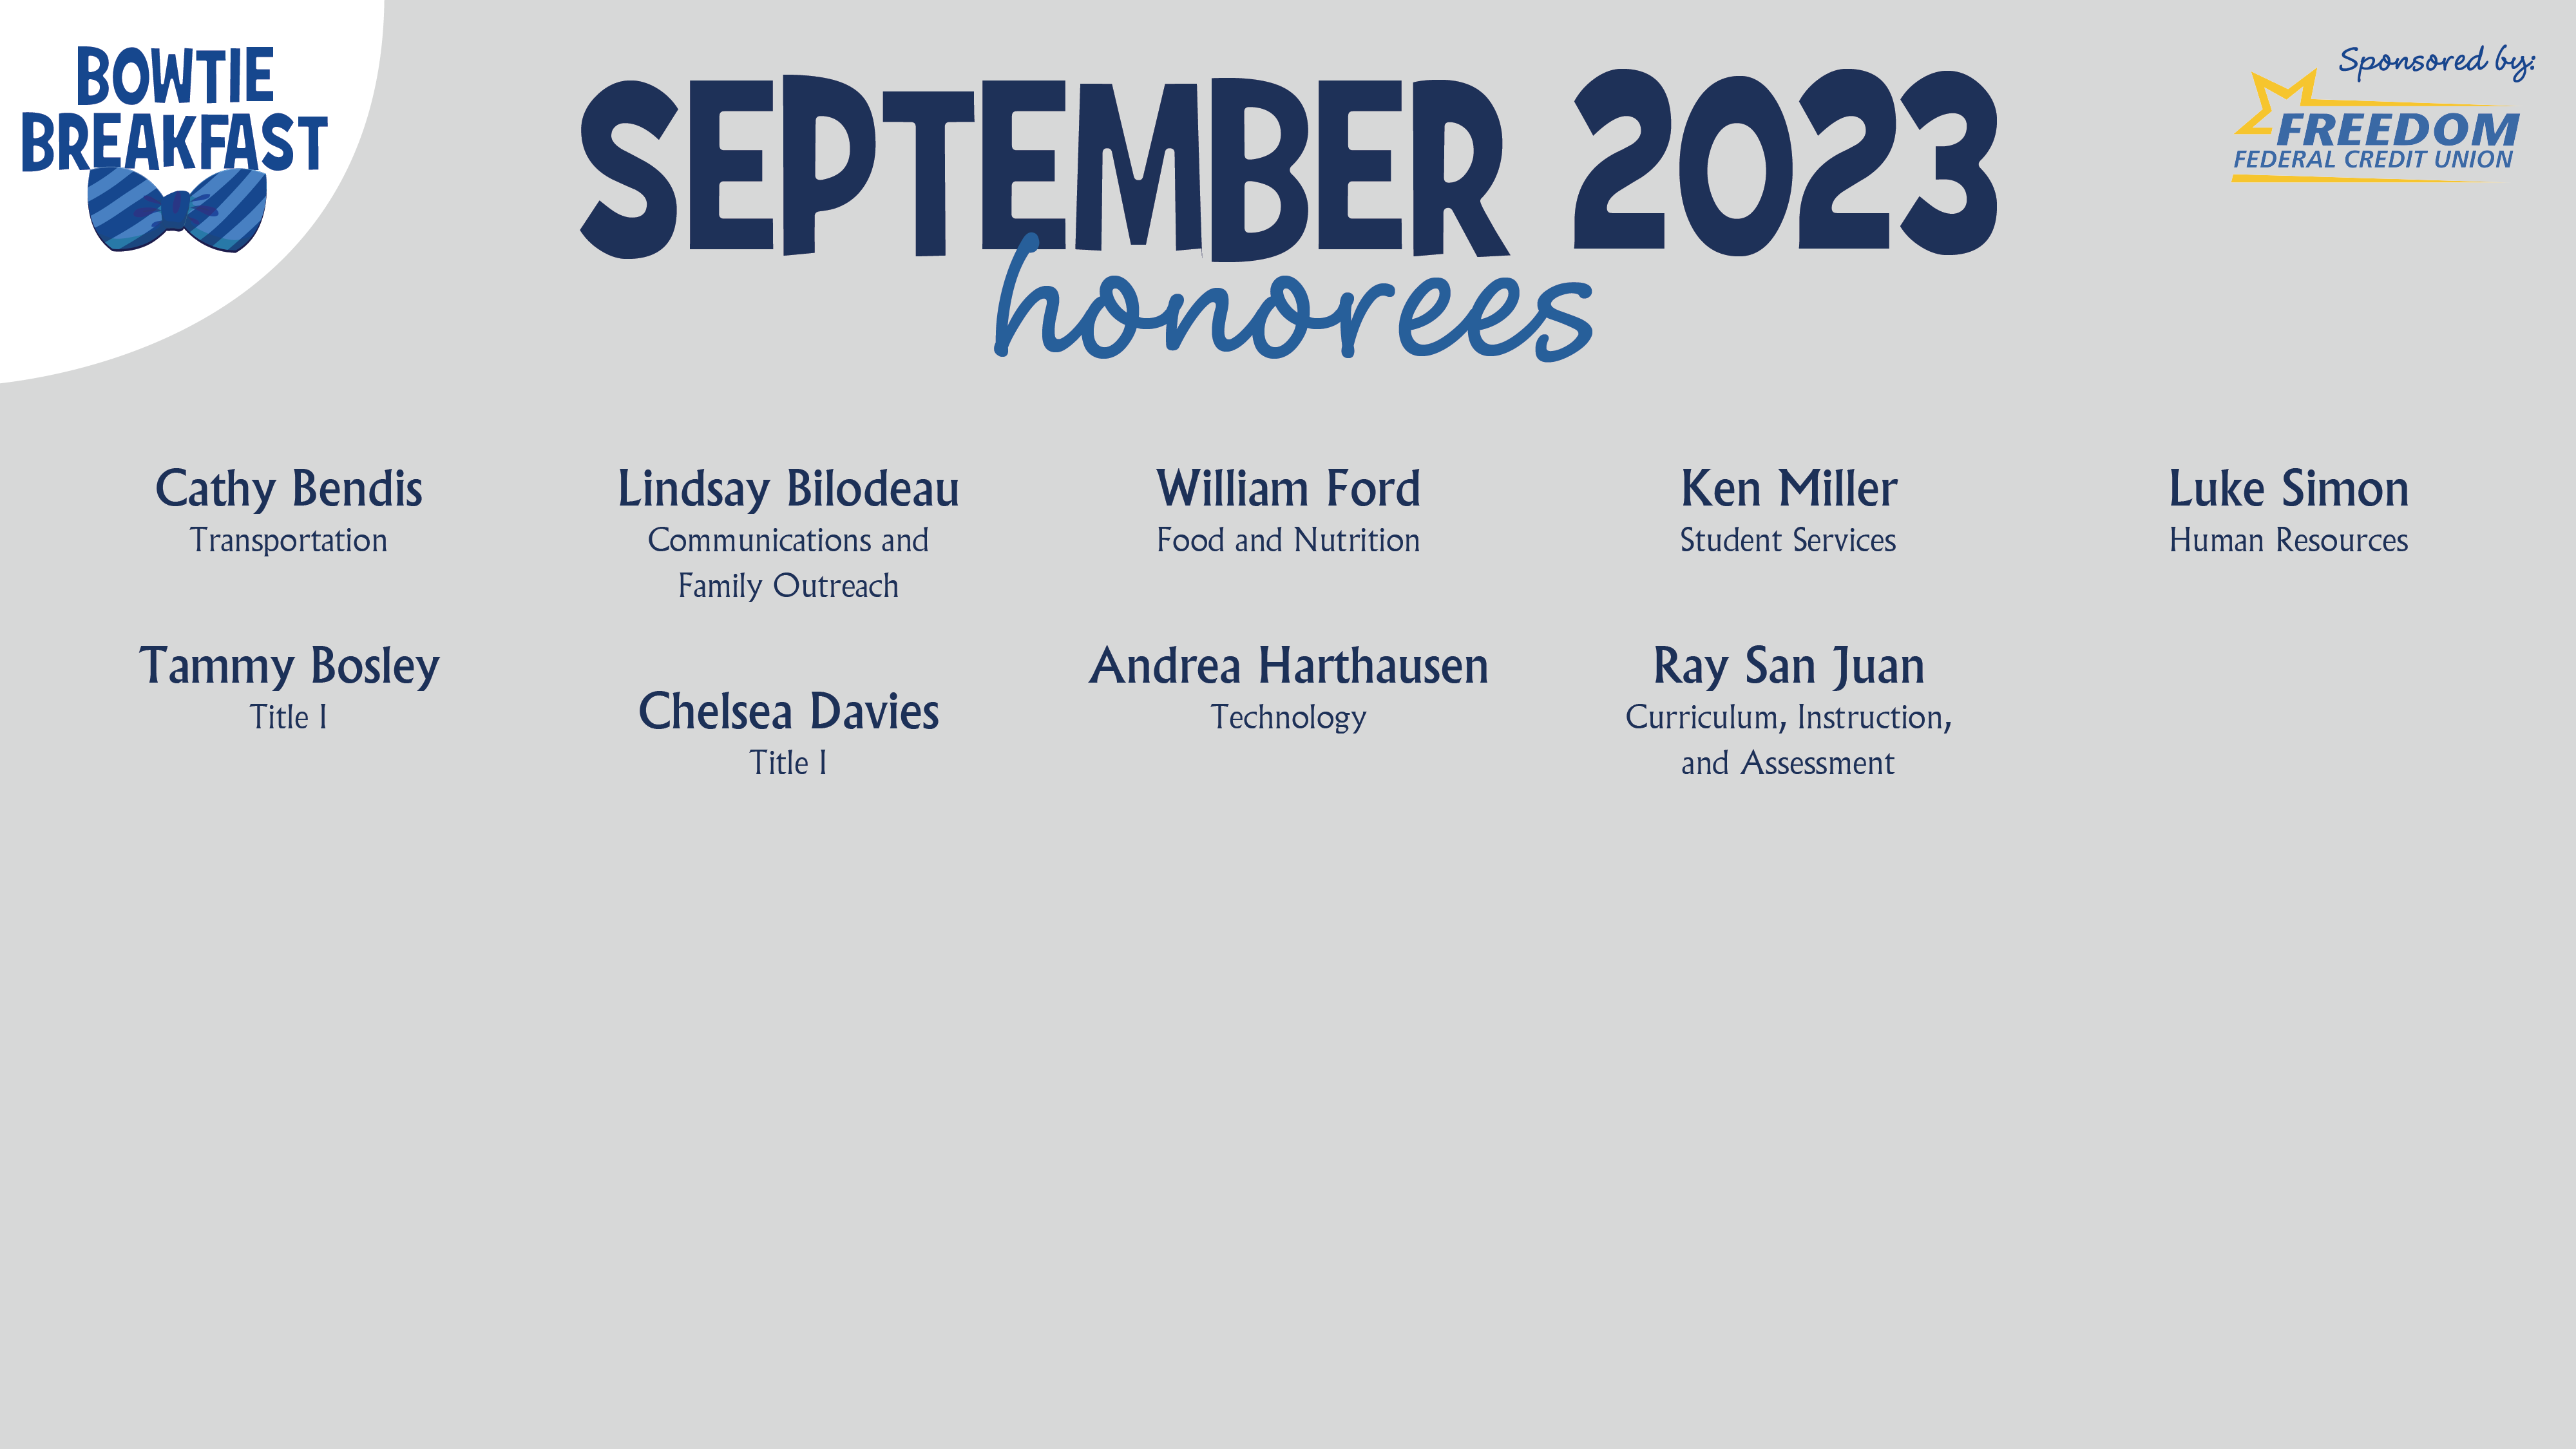 HCPS Bowtie Breakfast Honorees - September 2023